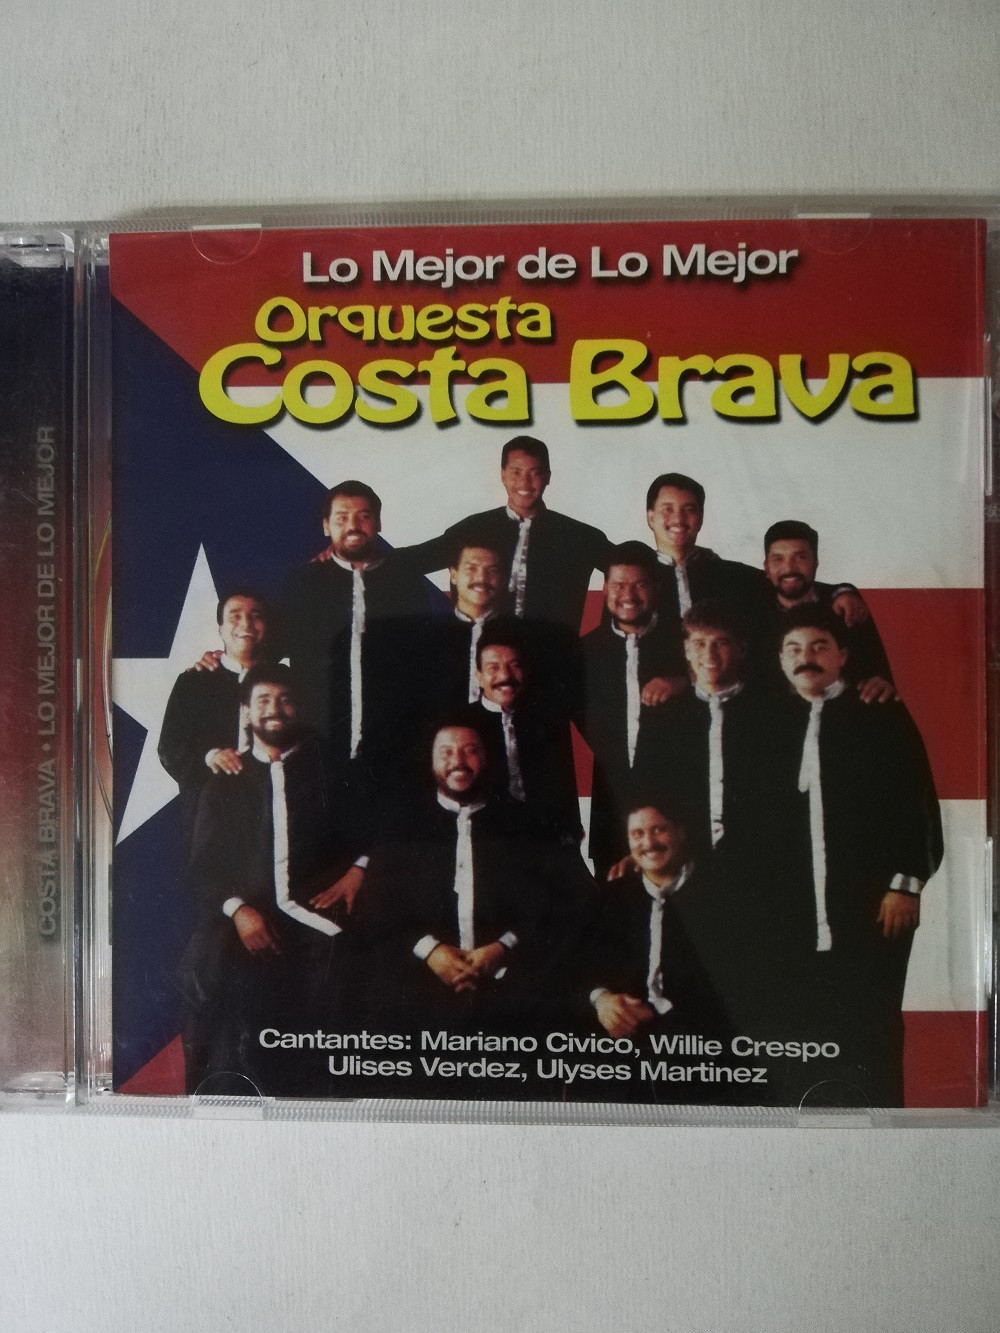 Imagen CD COSTA BRAVA - LO MEJOR DE LO MEJOR